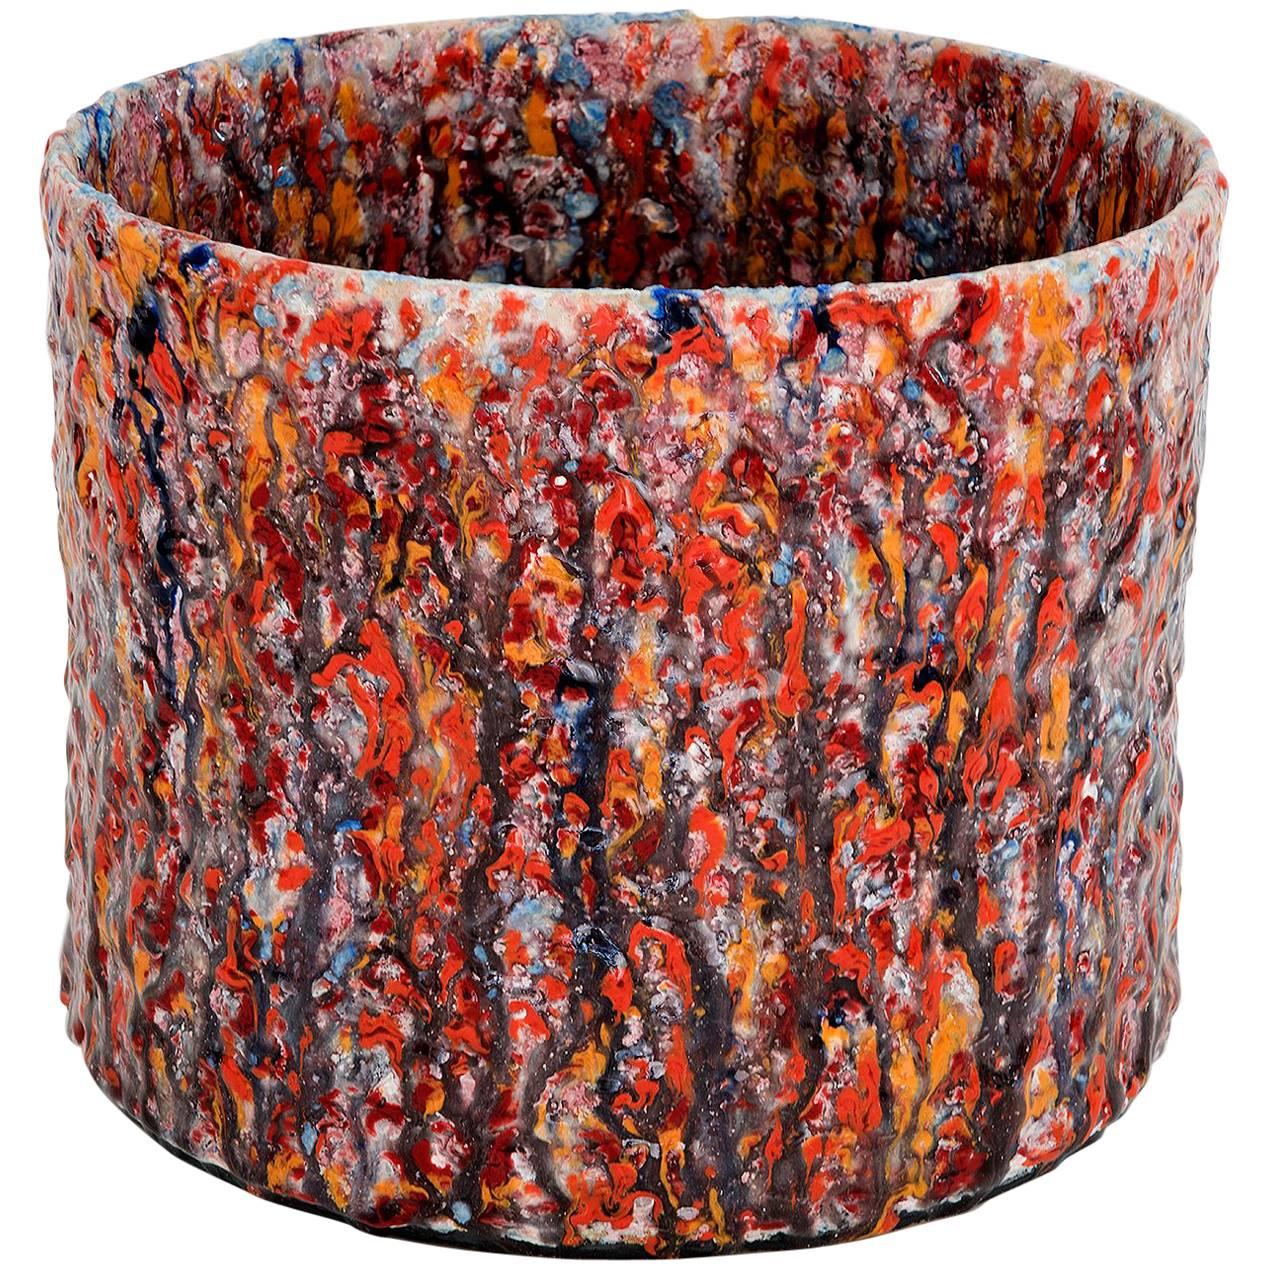 Vaso contemporaneo in ceramica testurizzata rossa modello "#1914" di Morten Løbner Espersen